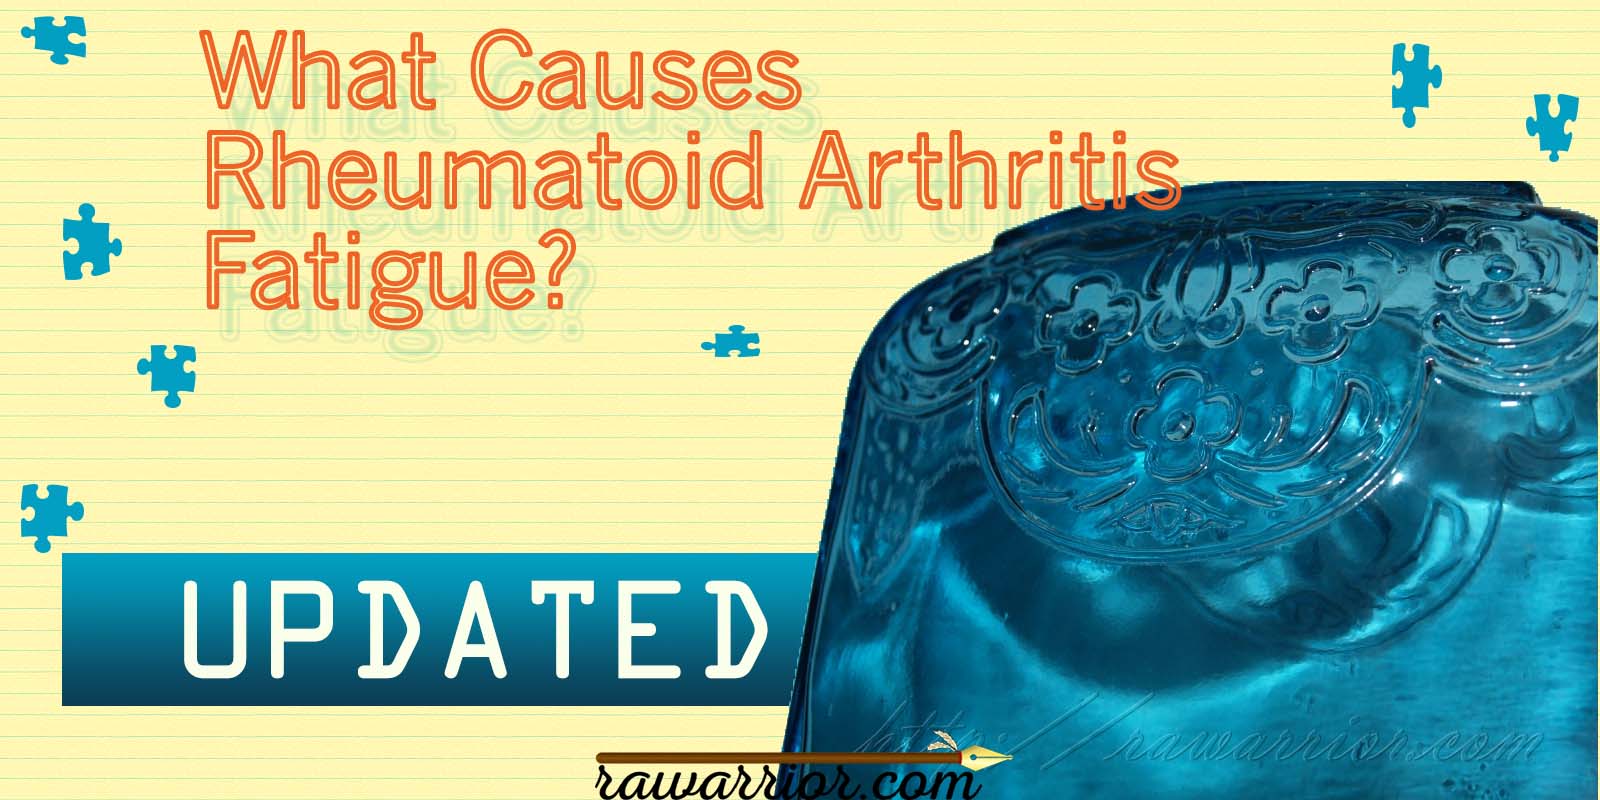 What Causes Rheumatoid Arthritis Fatigue?